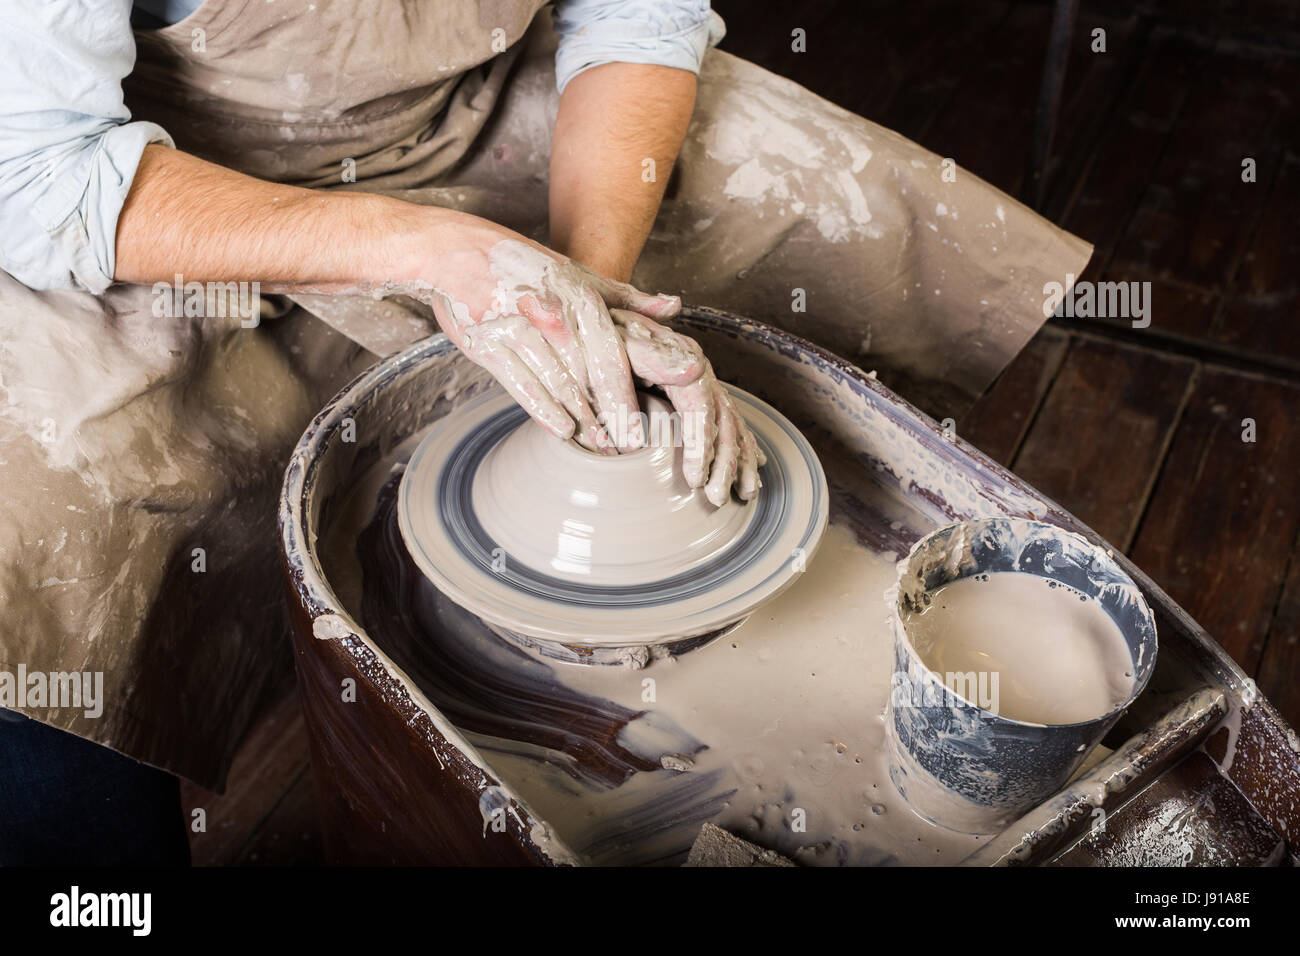 Atelier de poterie, céramique, concept art - close-up sur le travail de potier avec l'argile brute et l'homme les mains, un homme sculpt un ustensile avec les doigts, maître en tablier, vue d'en haut. Banque D'Images